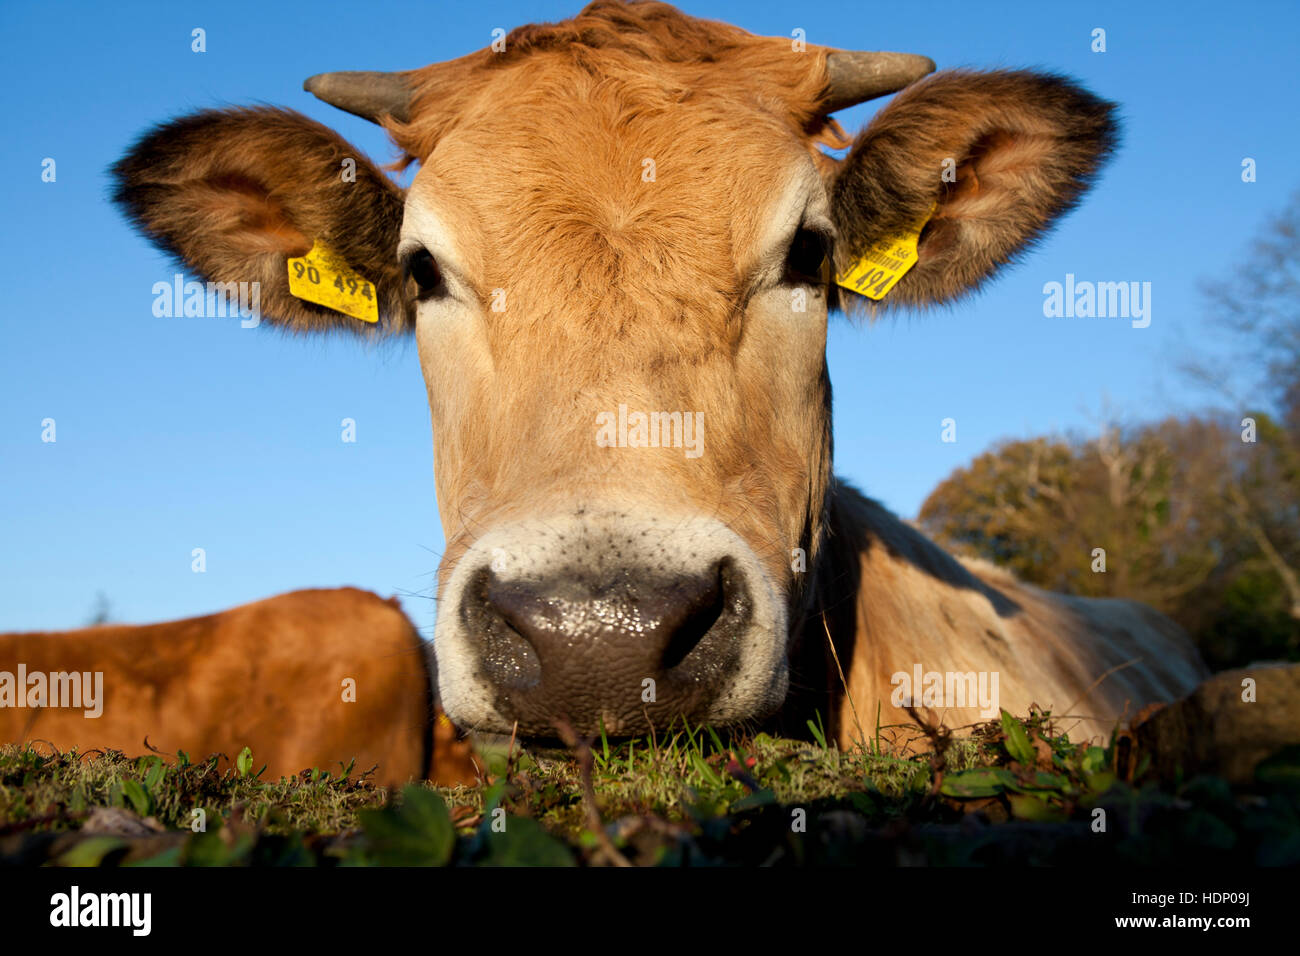 L'Europe, l'Allemagne, en Rhénanie du Nord-Westphalie, Herdecke, vache est à la recherche sur un mur couvert de lierre. Banque D'Images